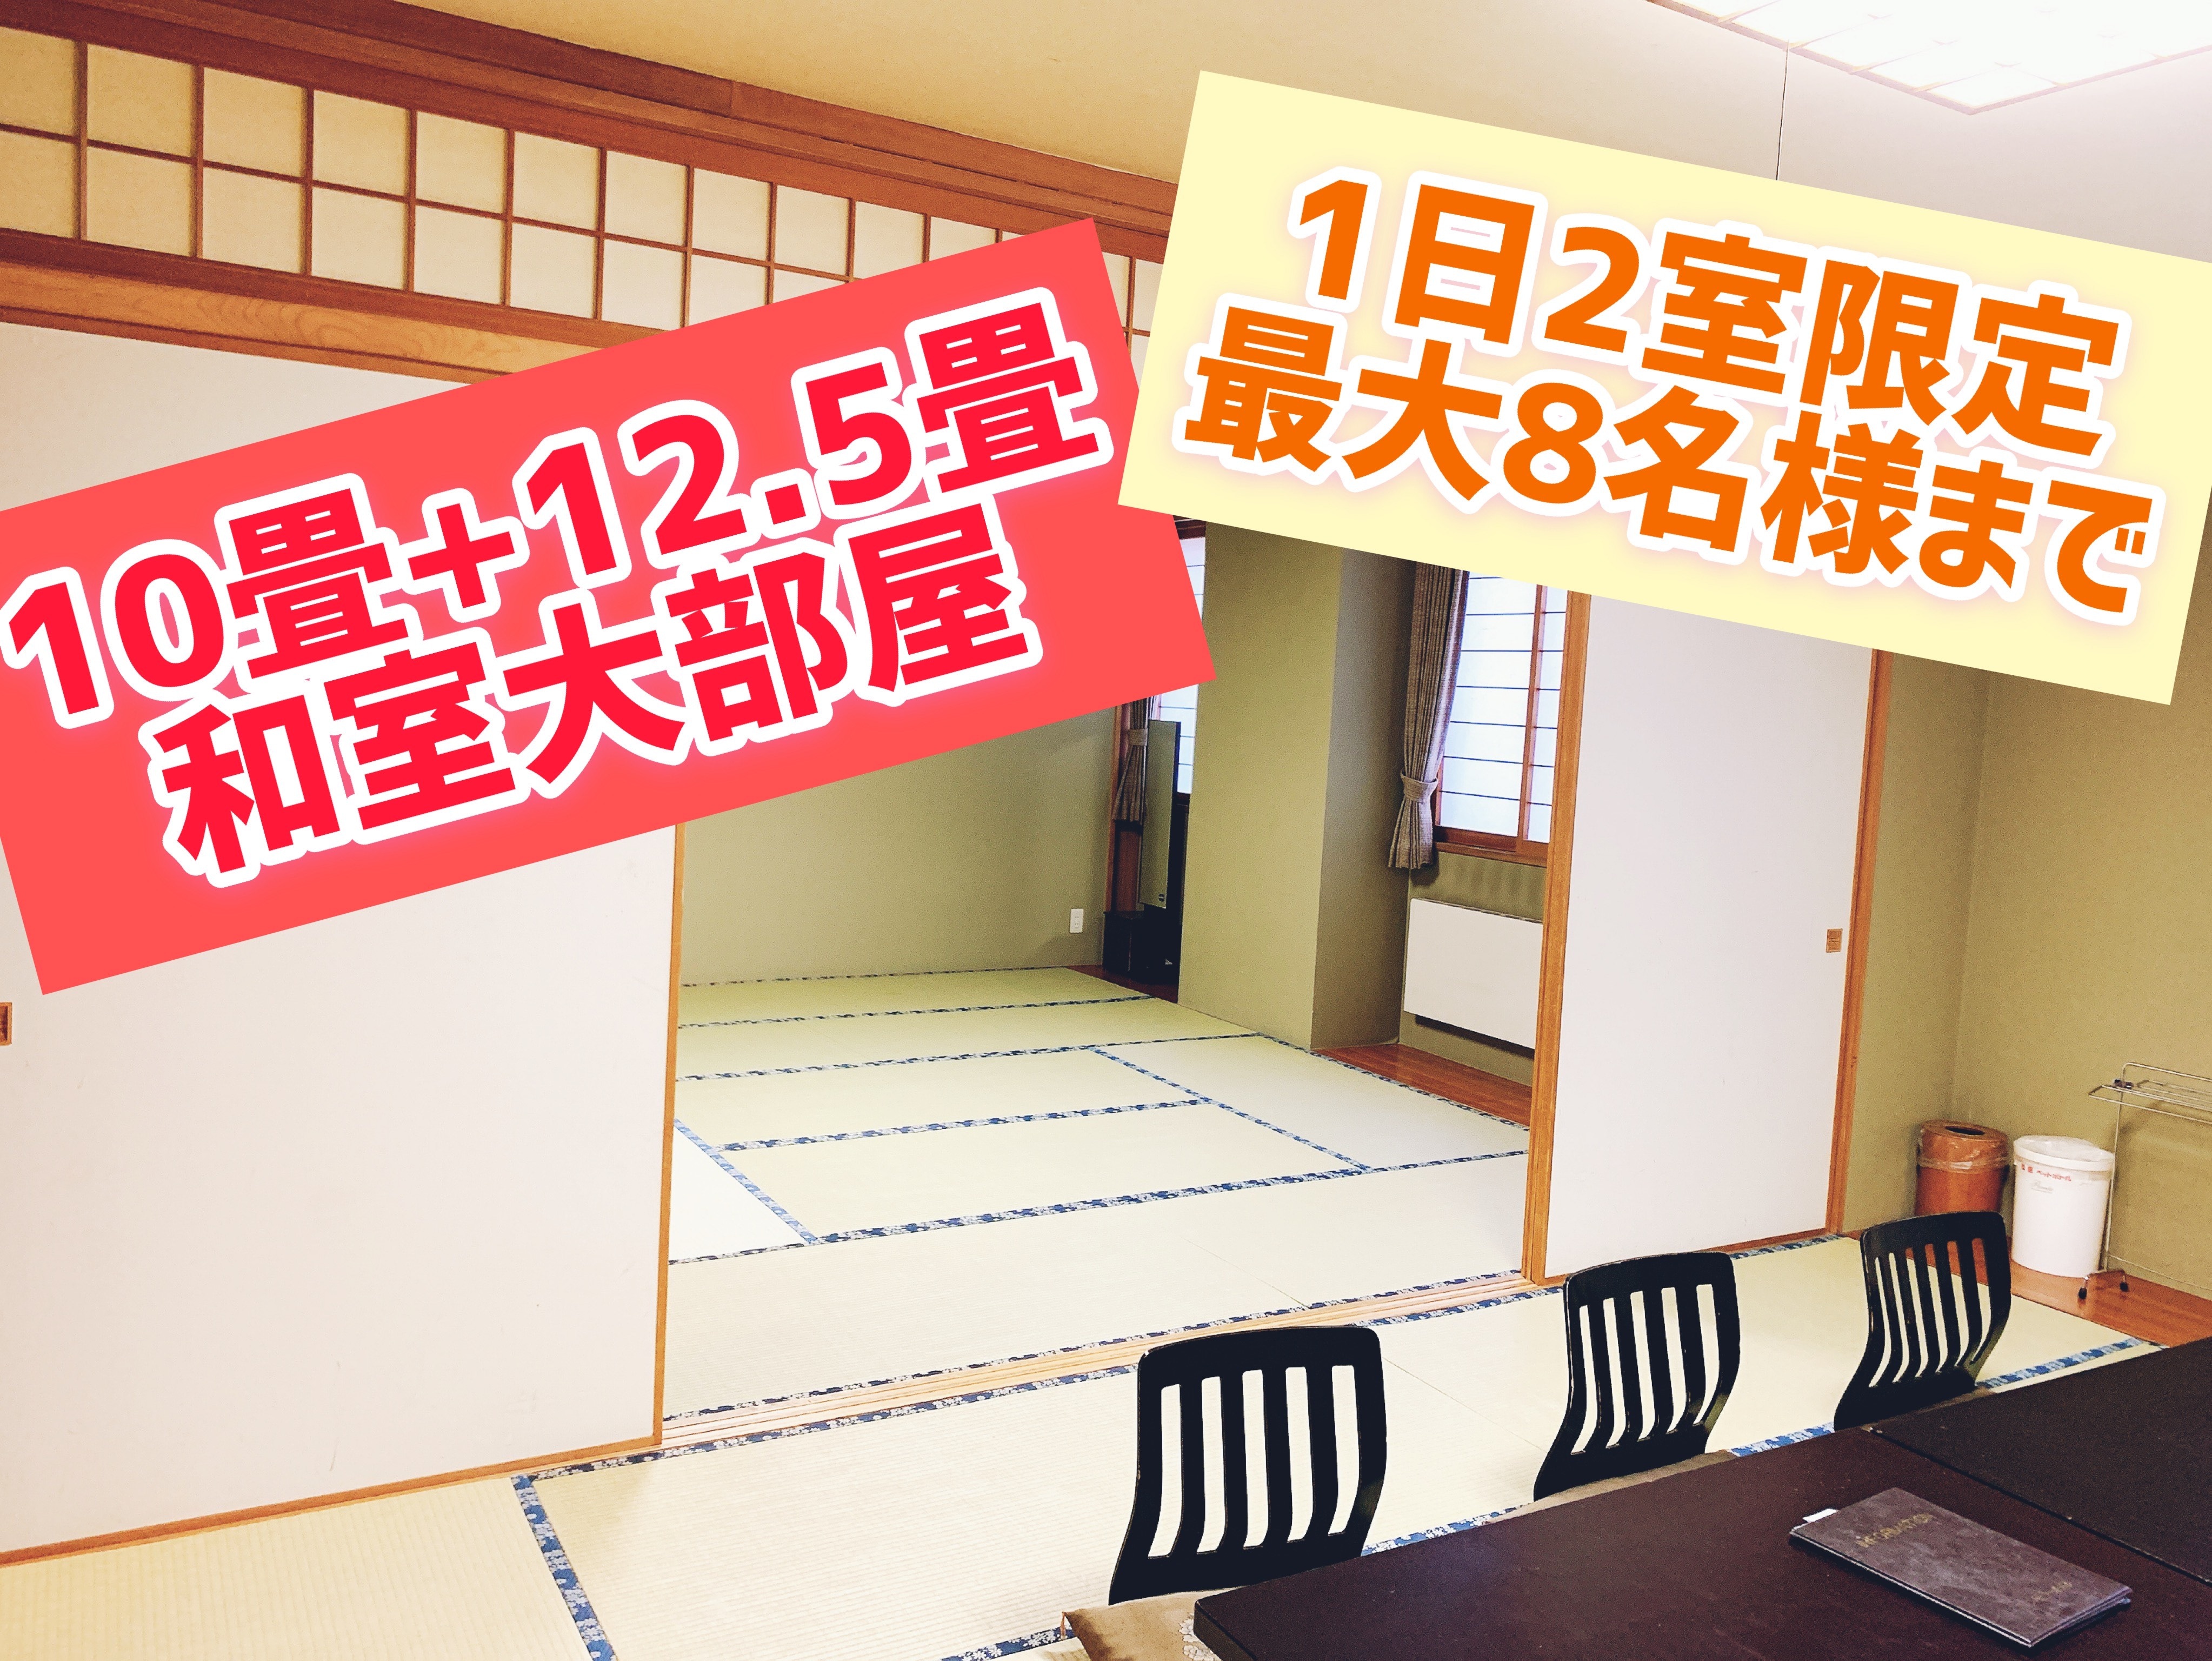 日式房间10张榻榻米+12.5张榻榻米